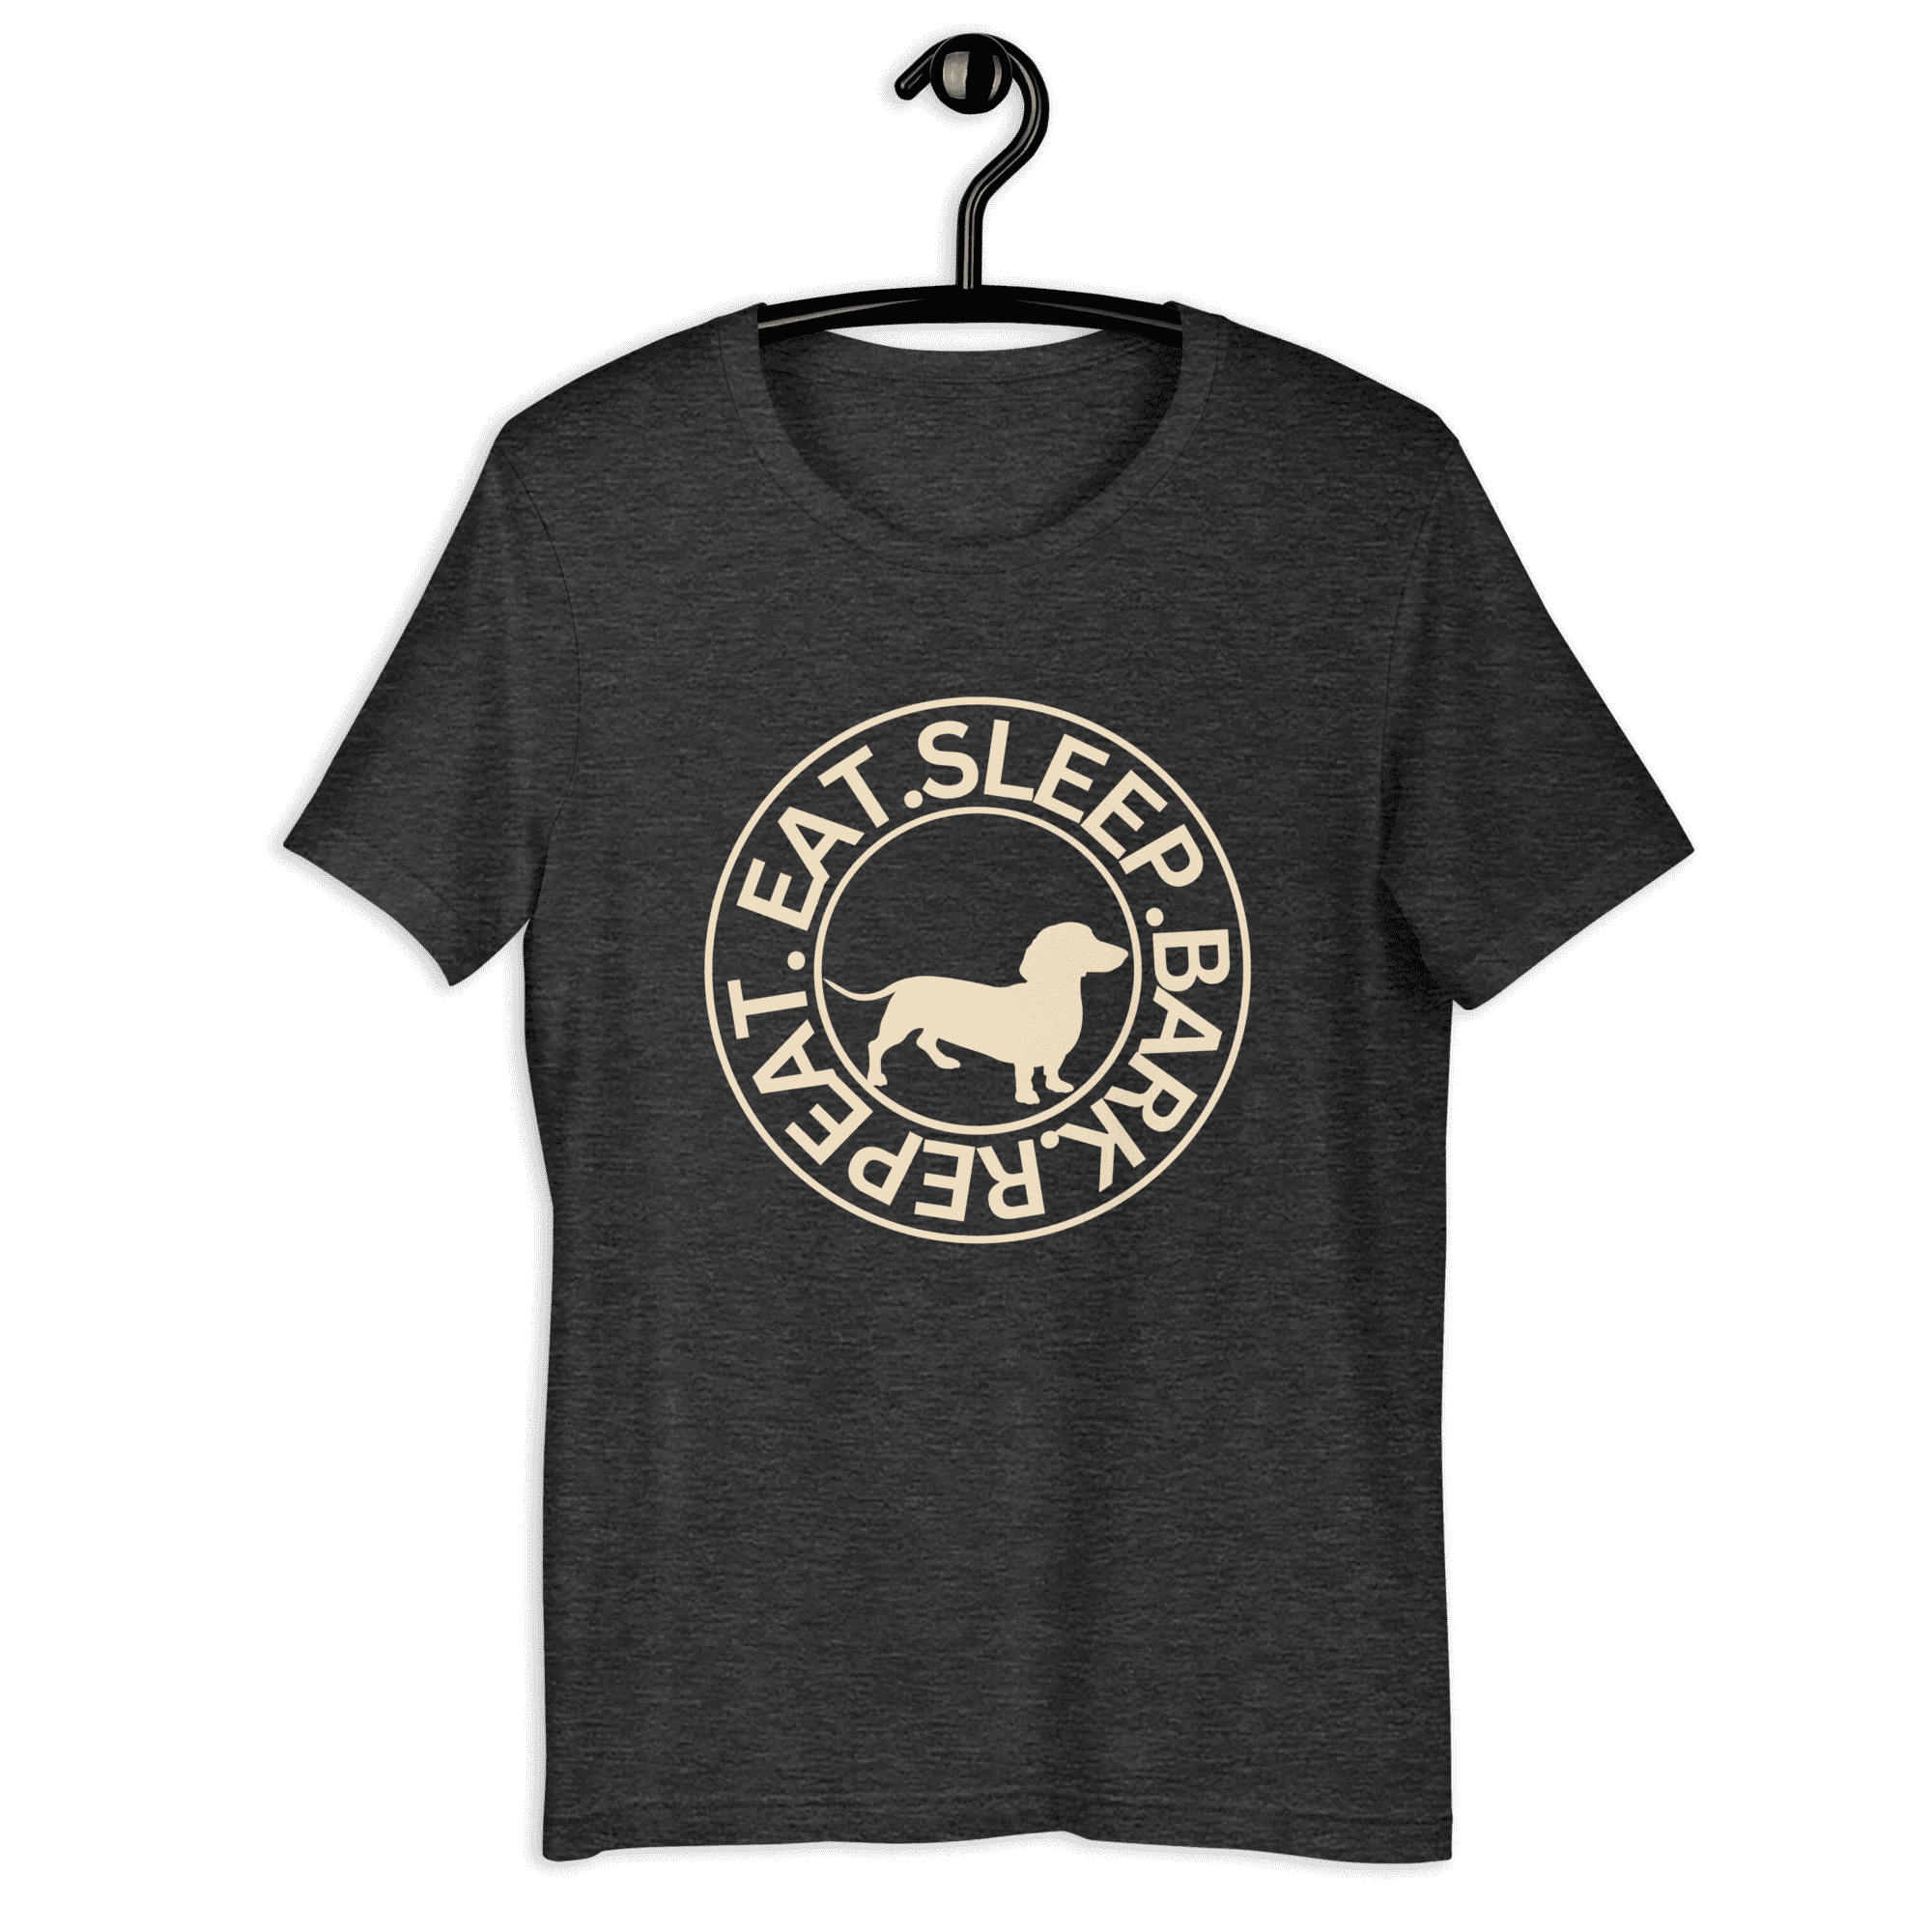 Eat Sleep Bark Repeat Transylvanian Hound (Erdélyi Kopó) Unisex T-Shirt. Dark Grey